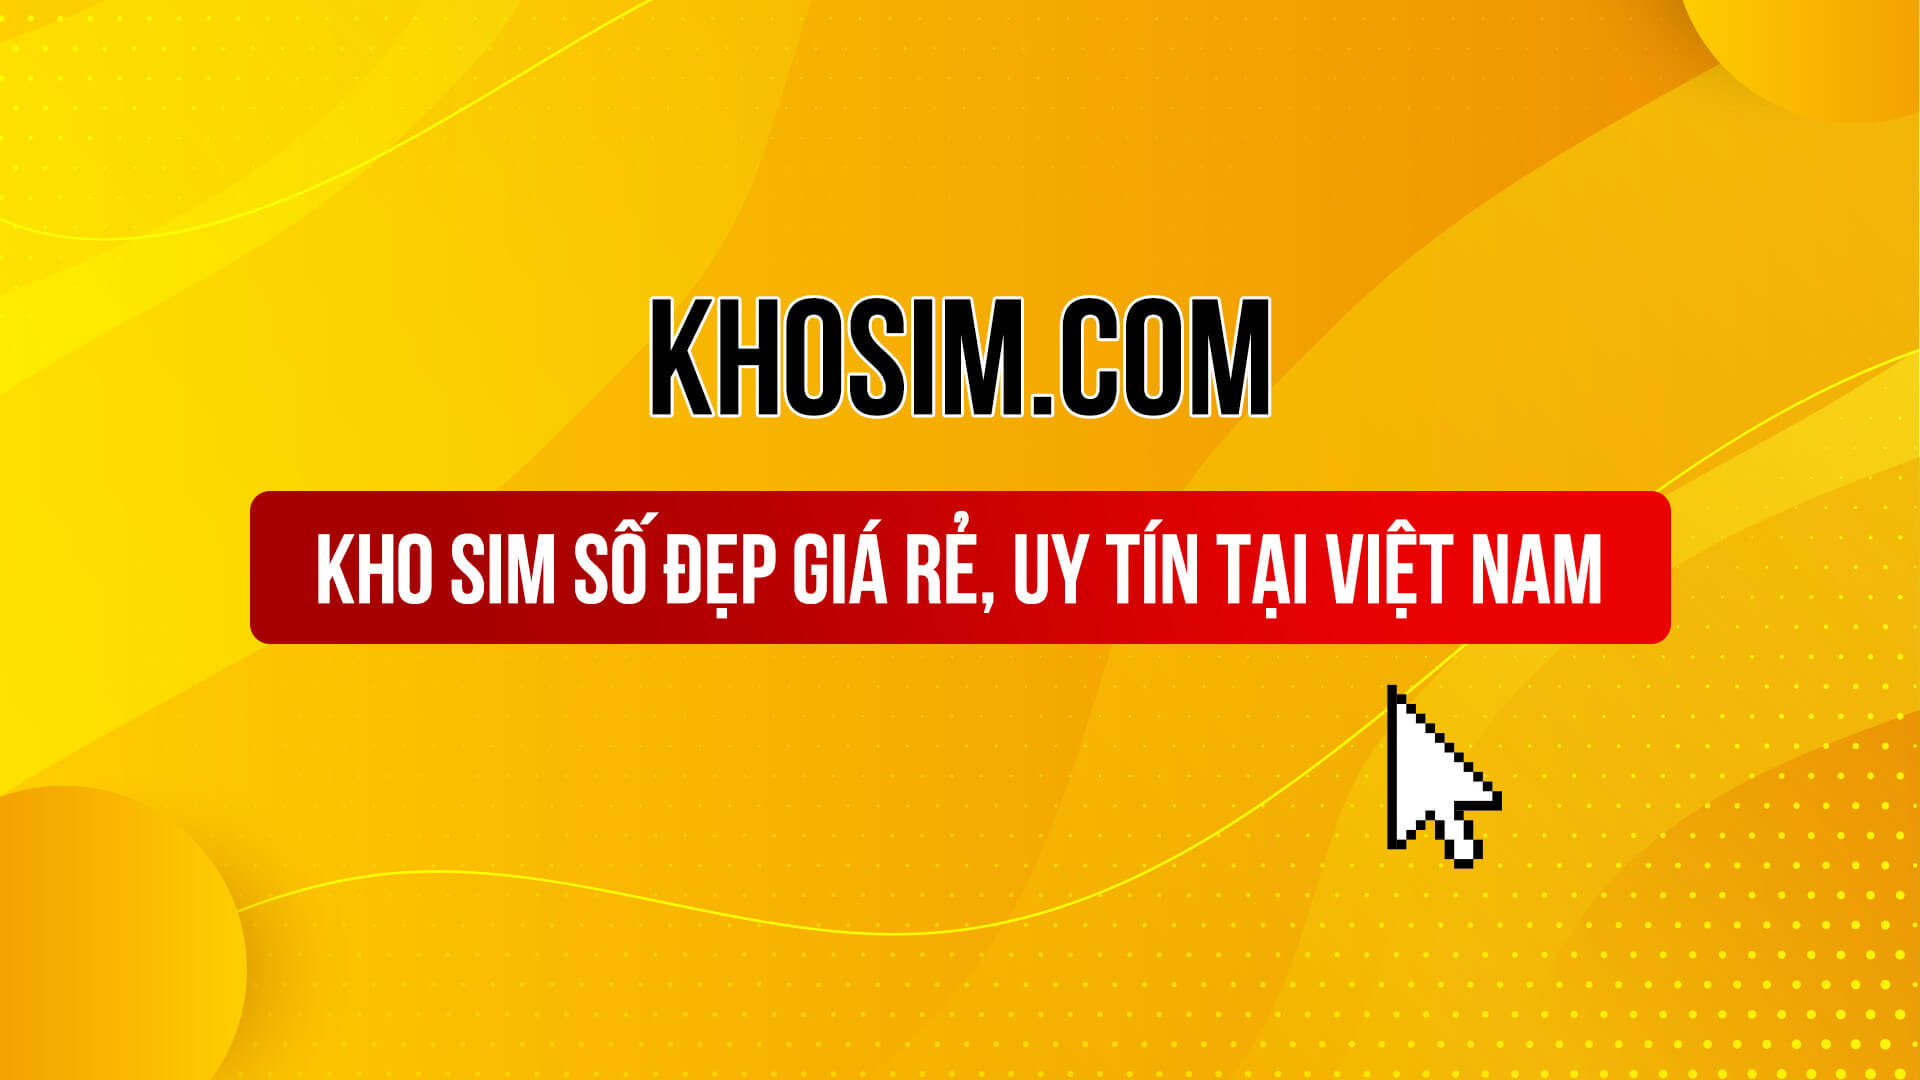 Review khosim.com